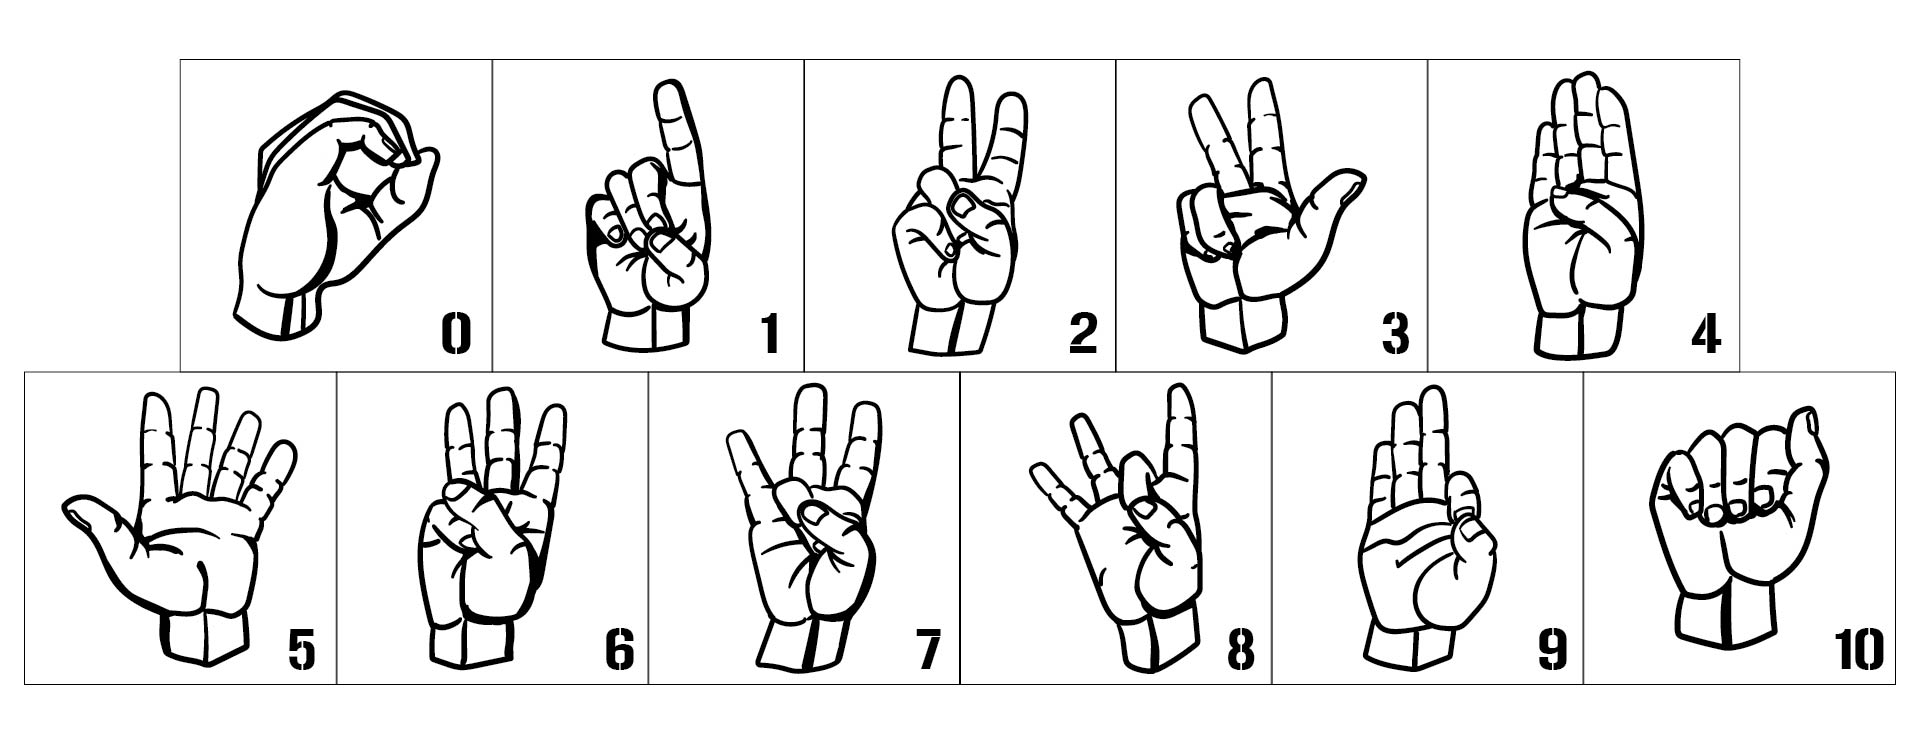 Sign Language Worksheets Free Printable_25166